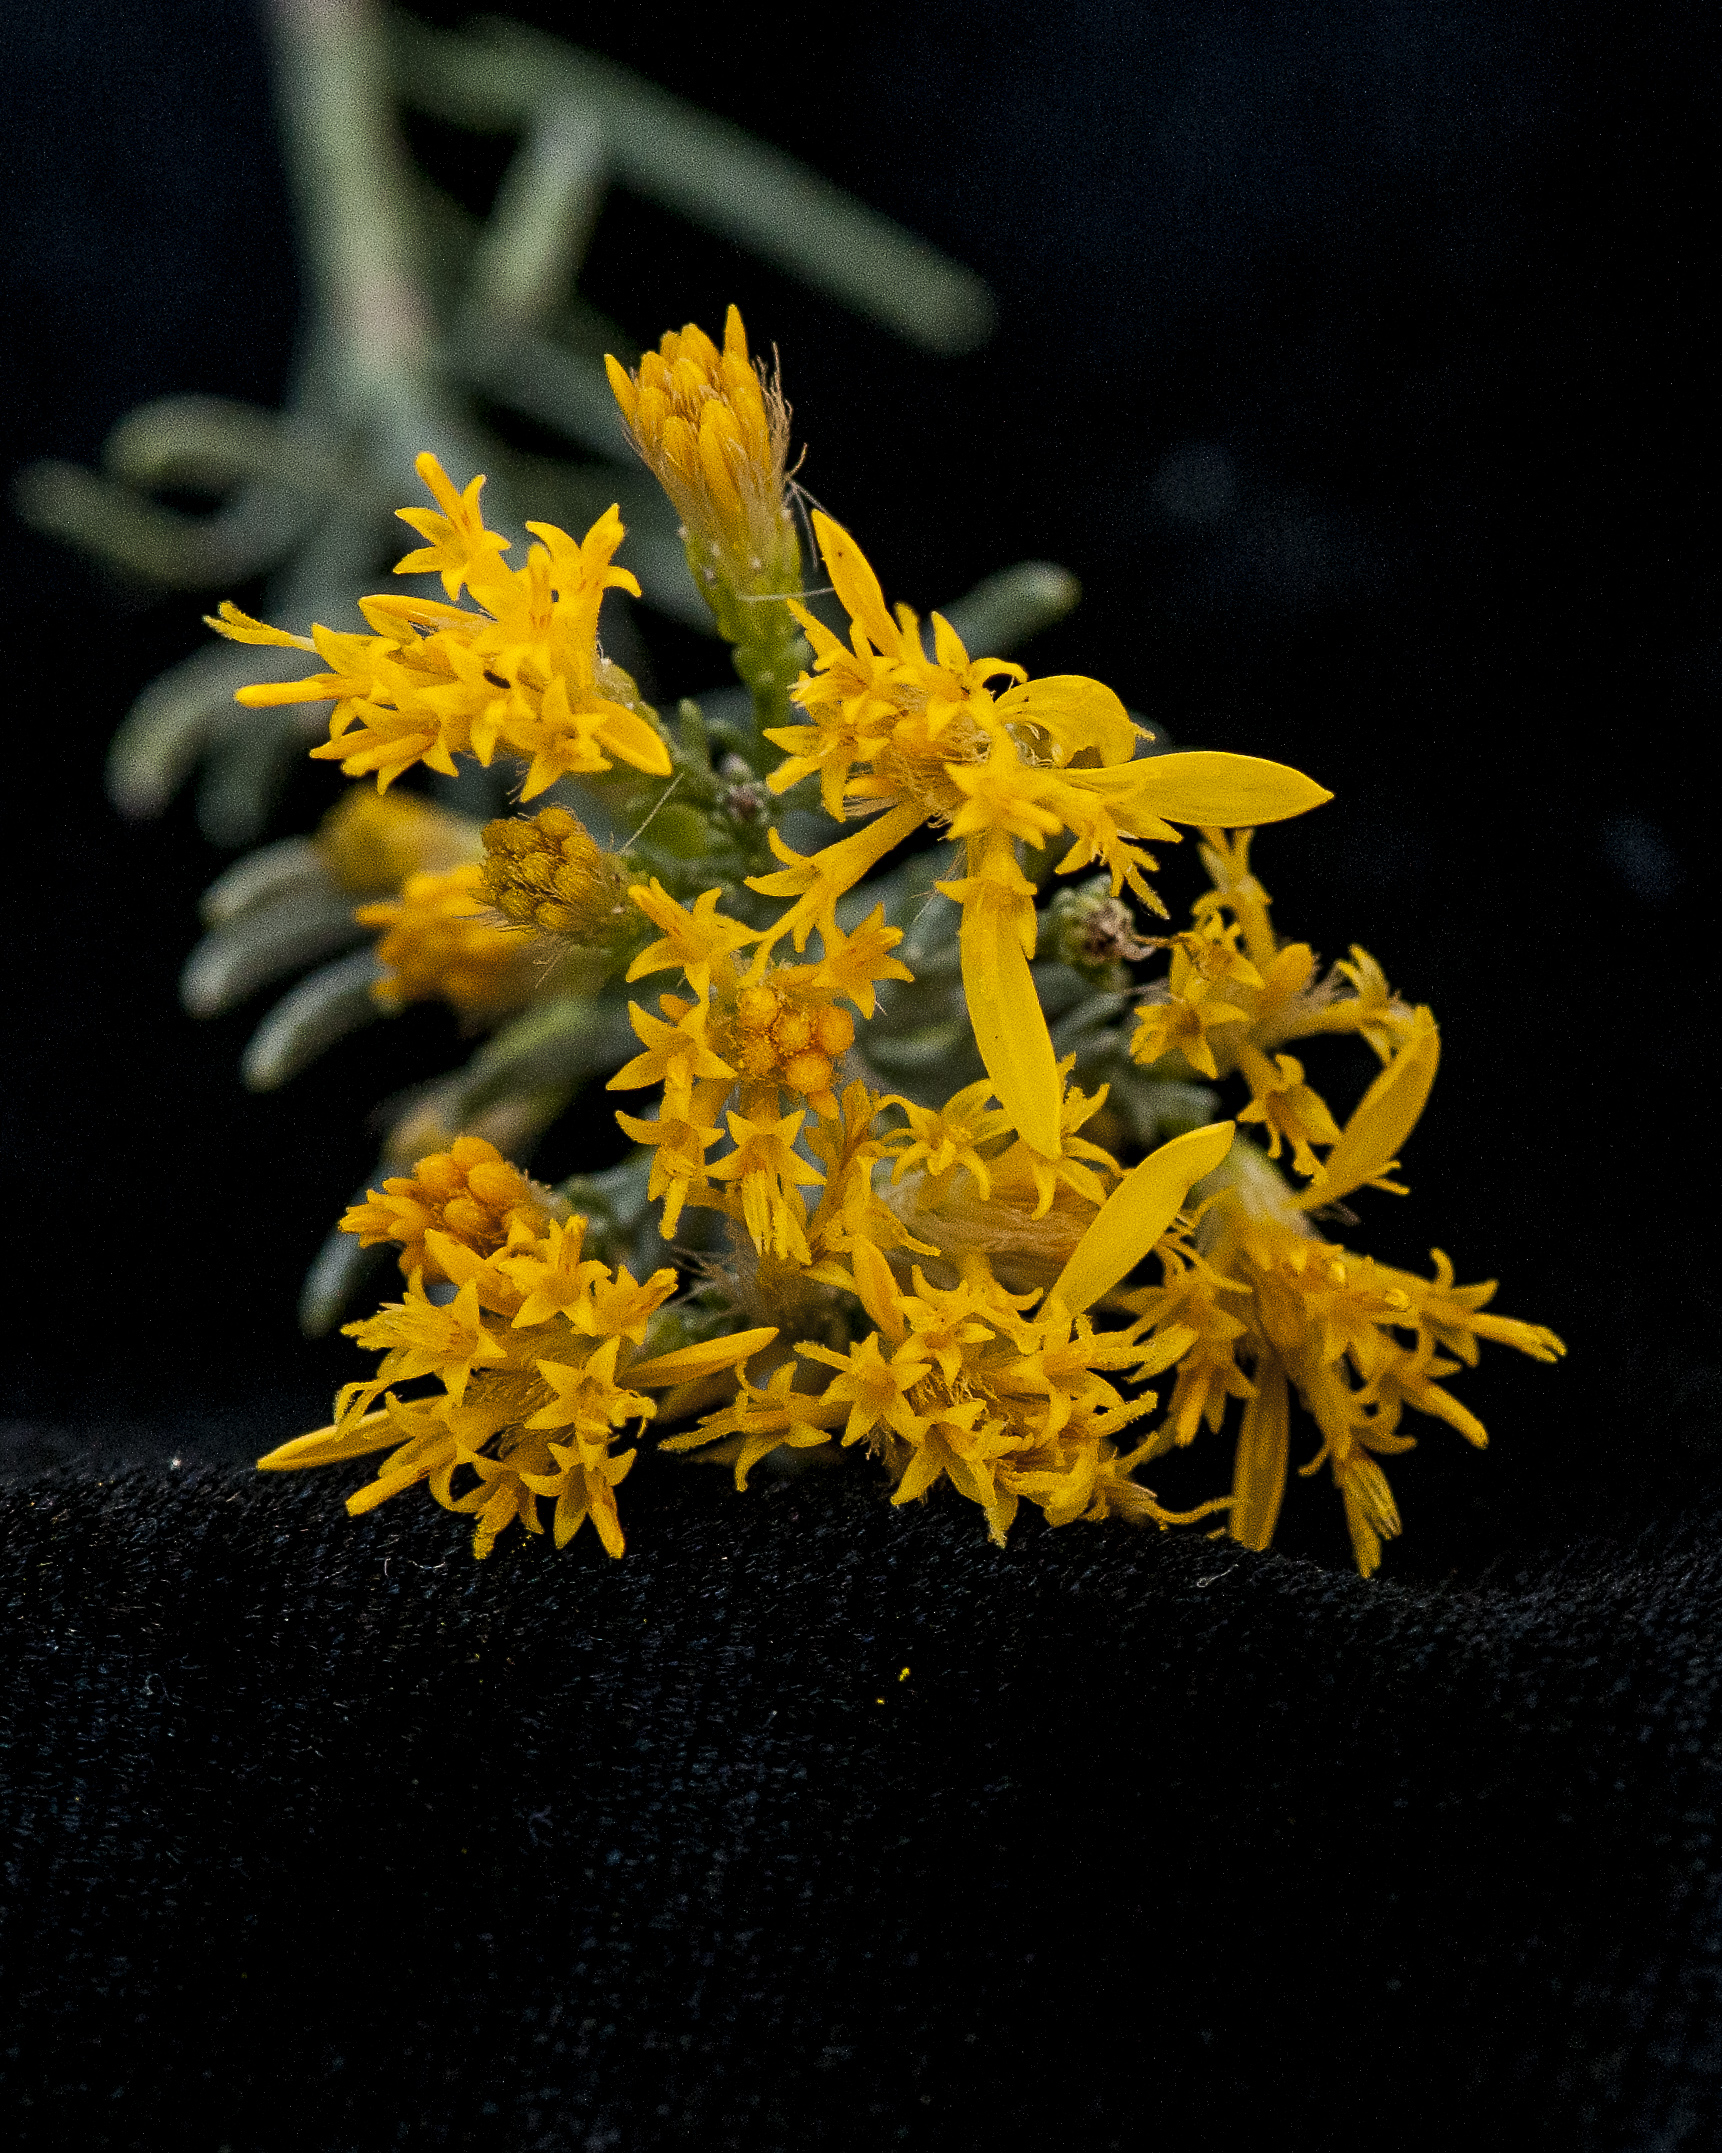 Turpentine Bush Flower